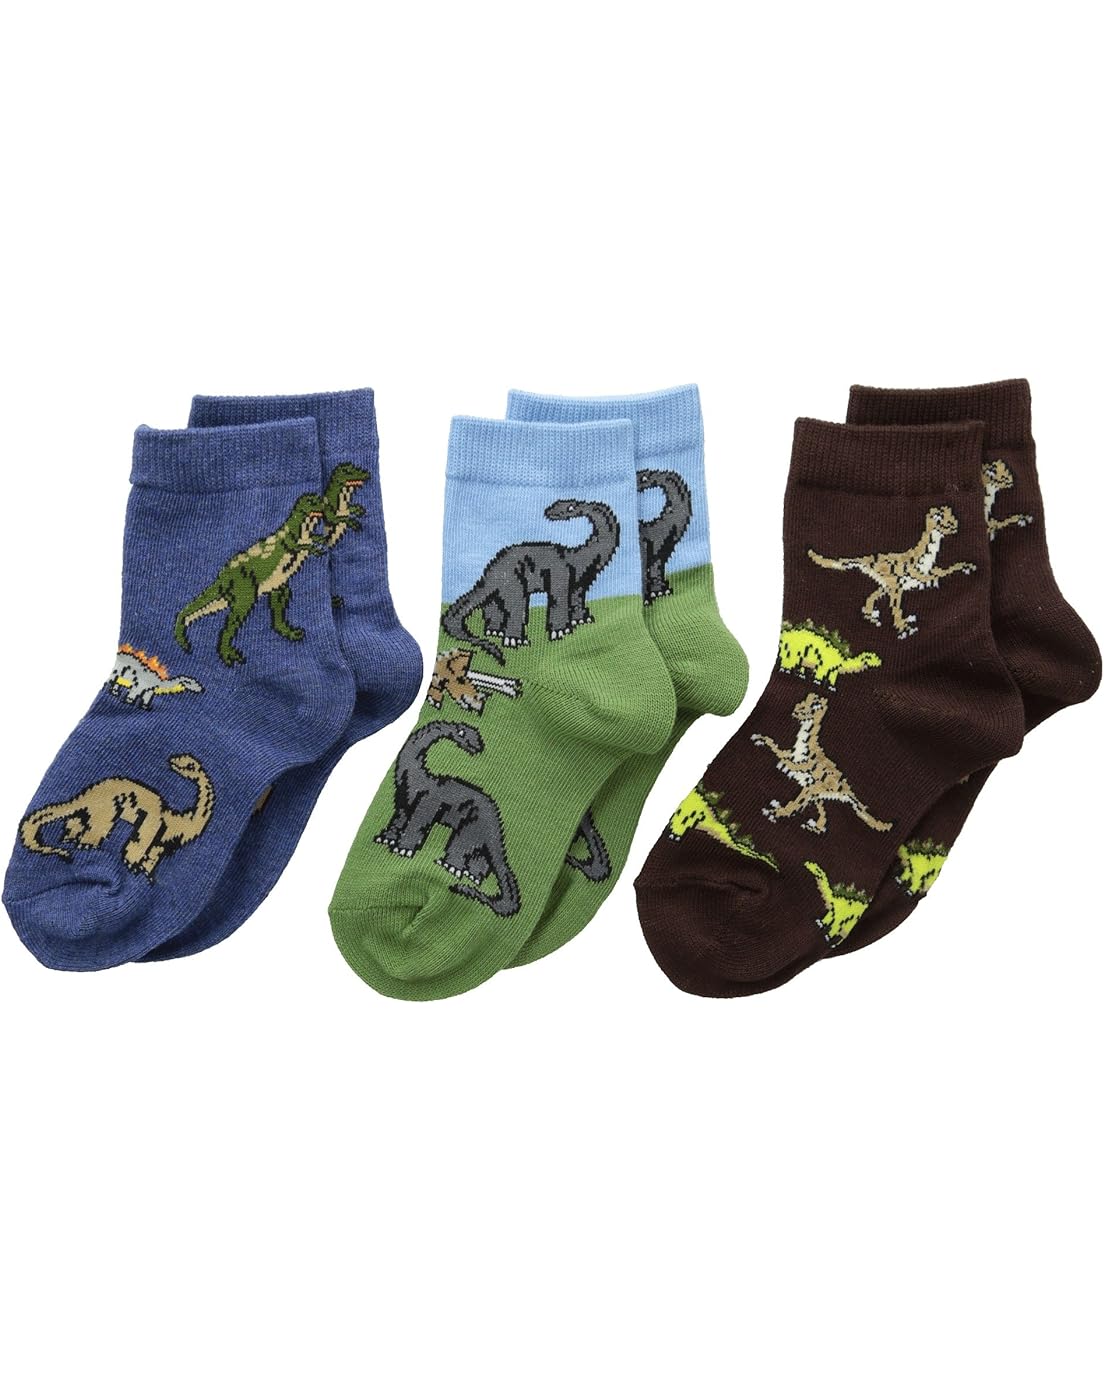 Jefferies Socks Dino Triple Treat 3-Pack (Infant/Toddler/Little Kid)